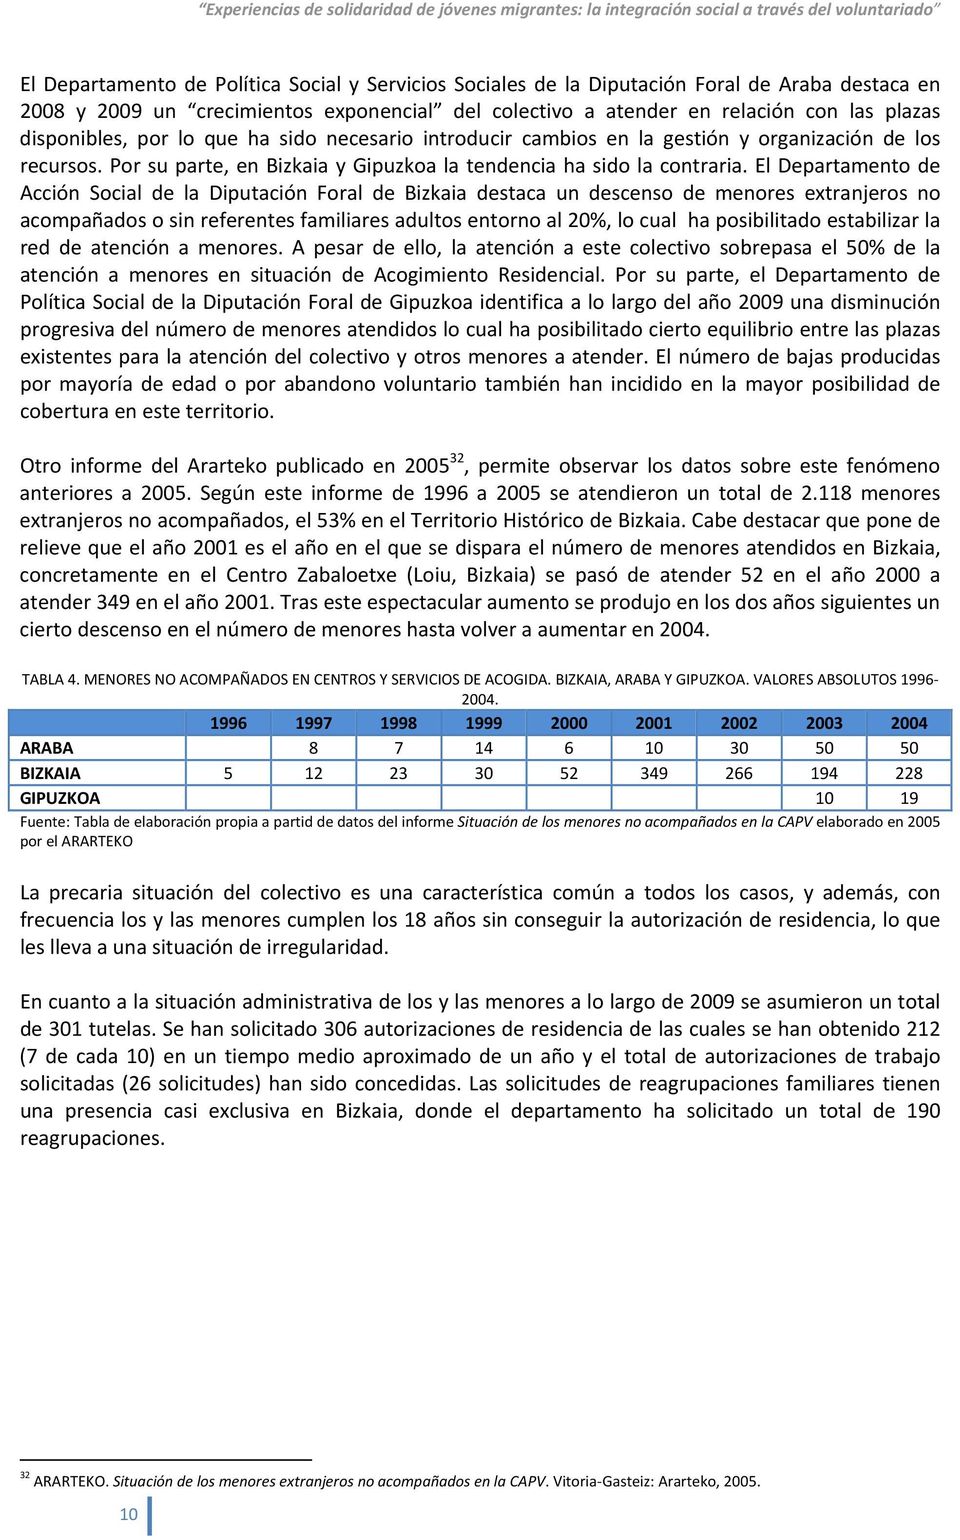 El Departamento de Acción Social de la Diputación Foral de Bizkaia destaca un descenso de menores extranjeros no acompañados o sin referentes familiares adultos entorno al 20%, lo cual ha